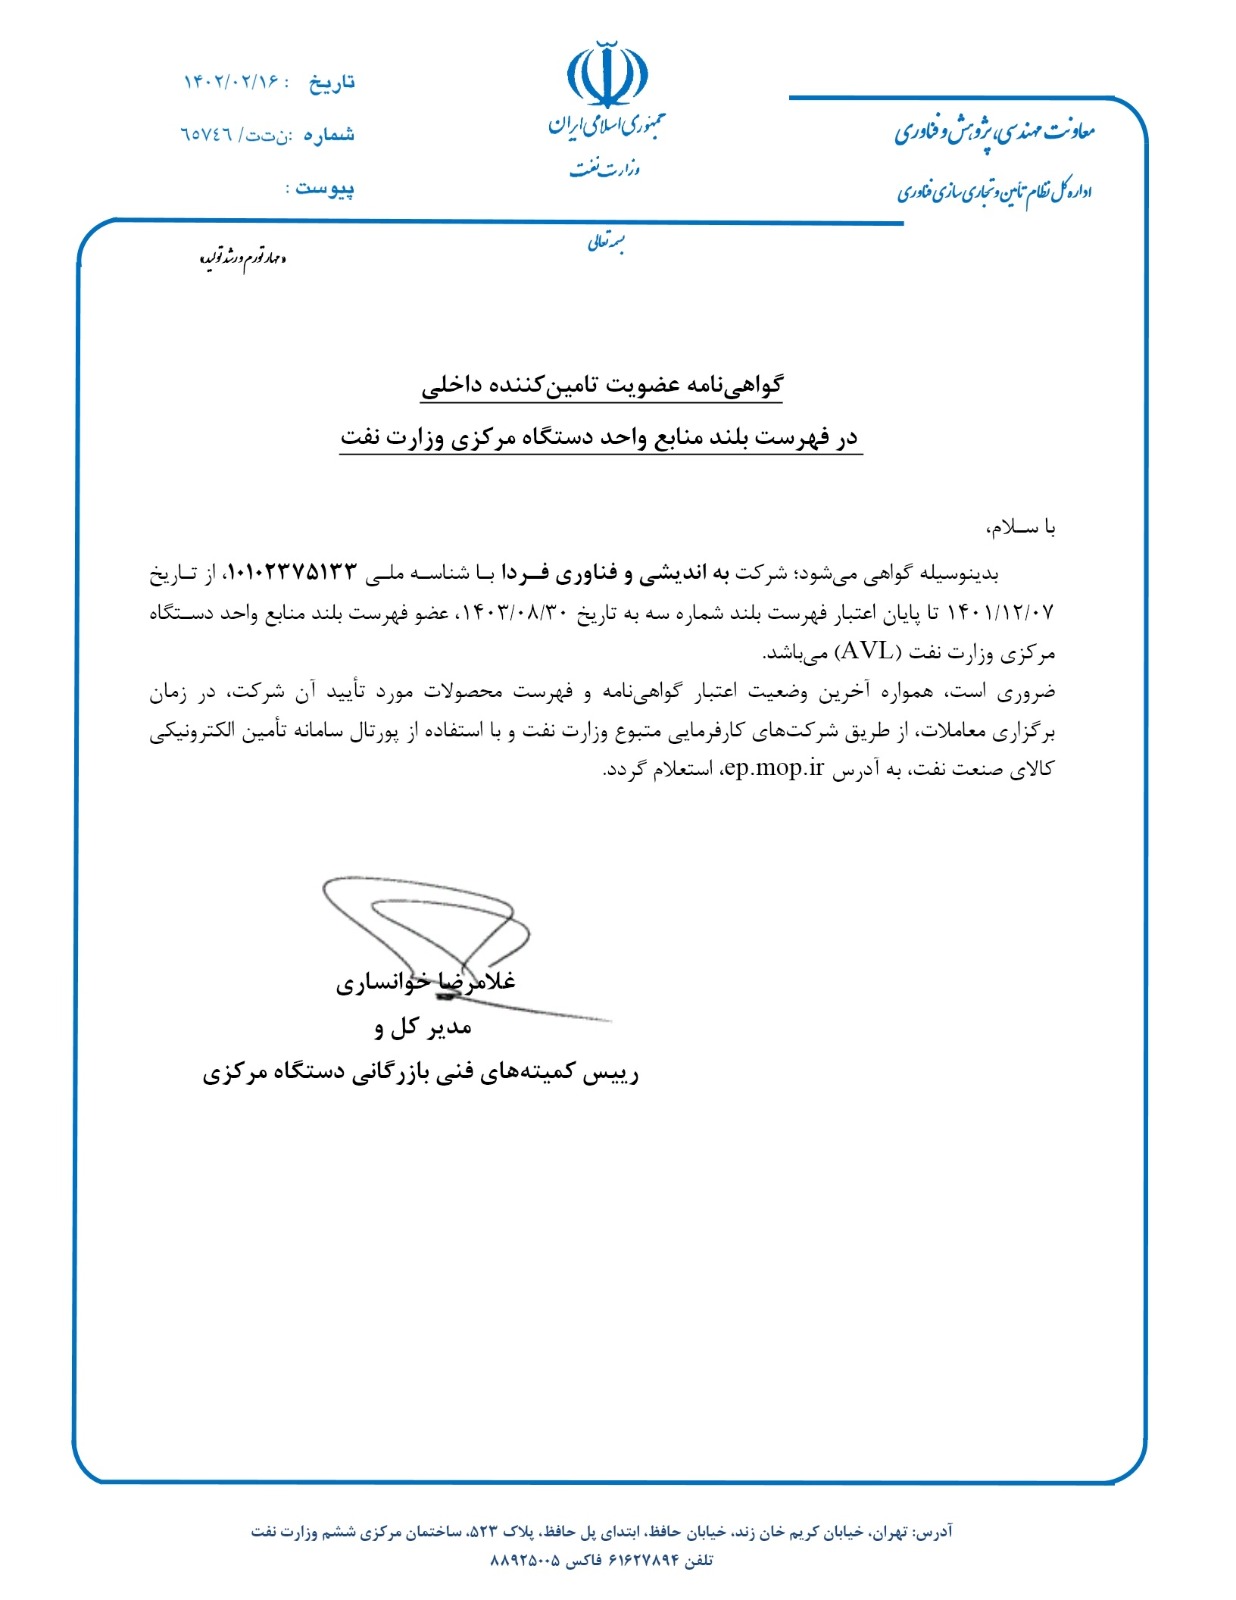 دریافت گواهی نامه عضویت در فهرست منابع وزارت نفت (AVL)